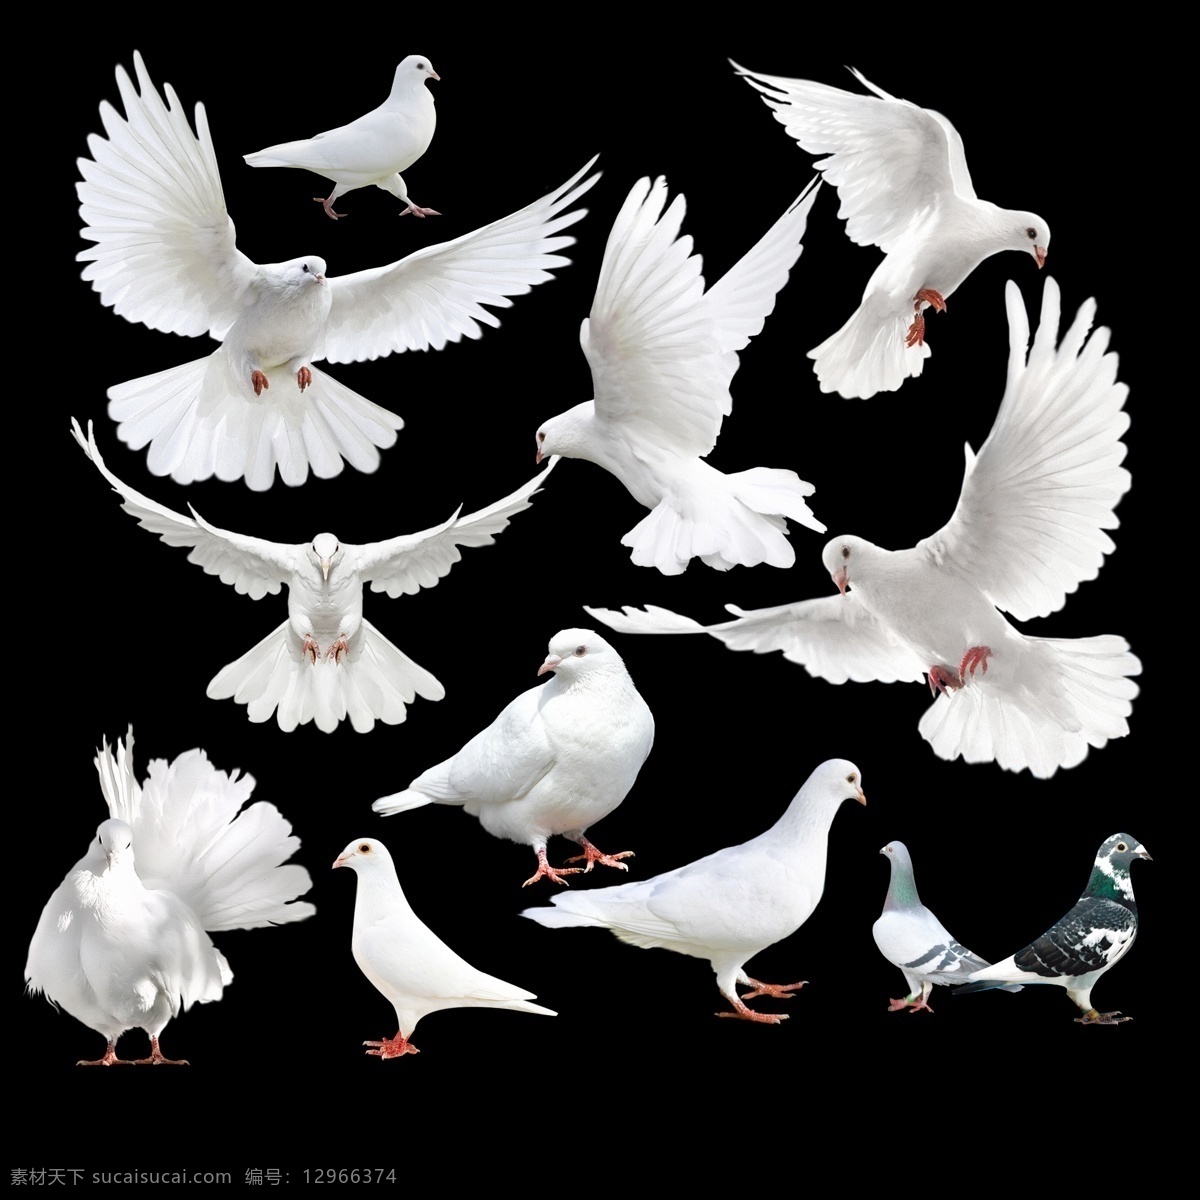 鸽子集 鸽子 白鸽 信鸽 白色天使 天使 分层